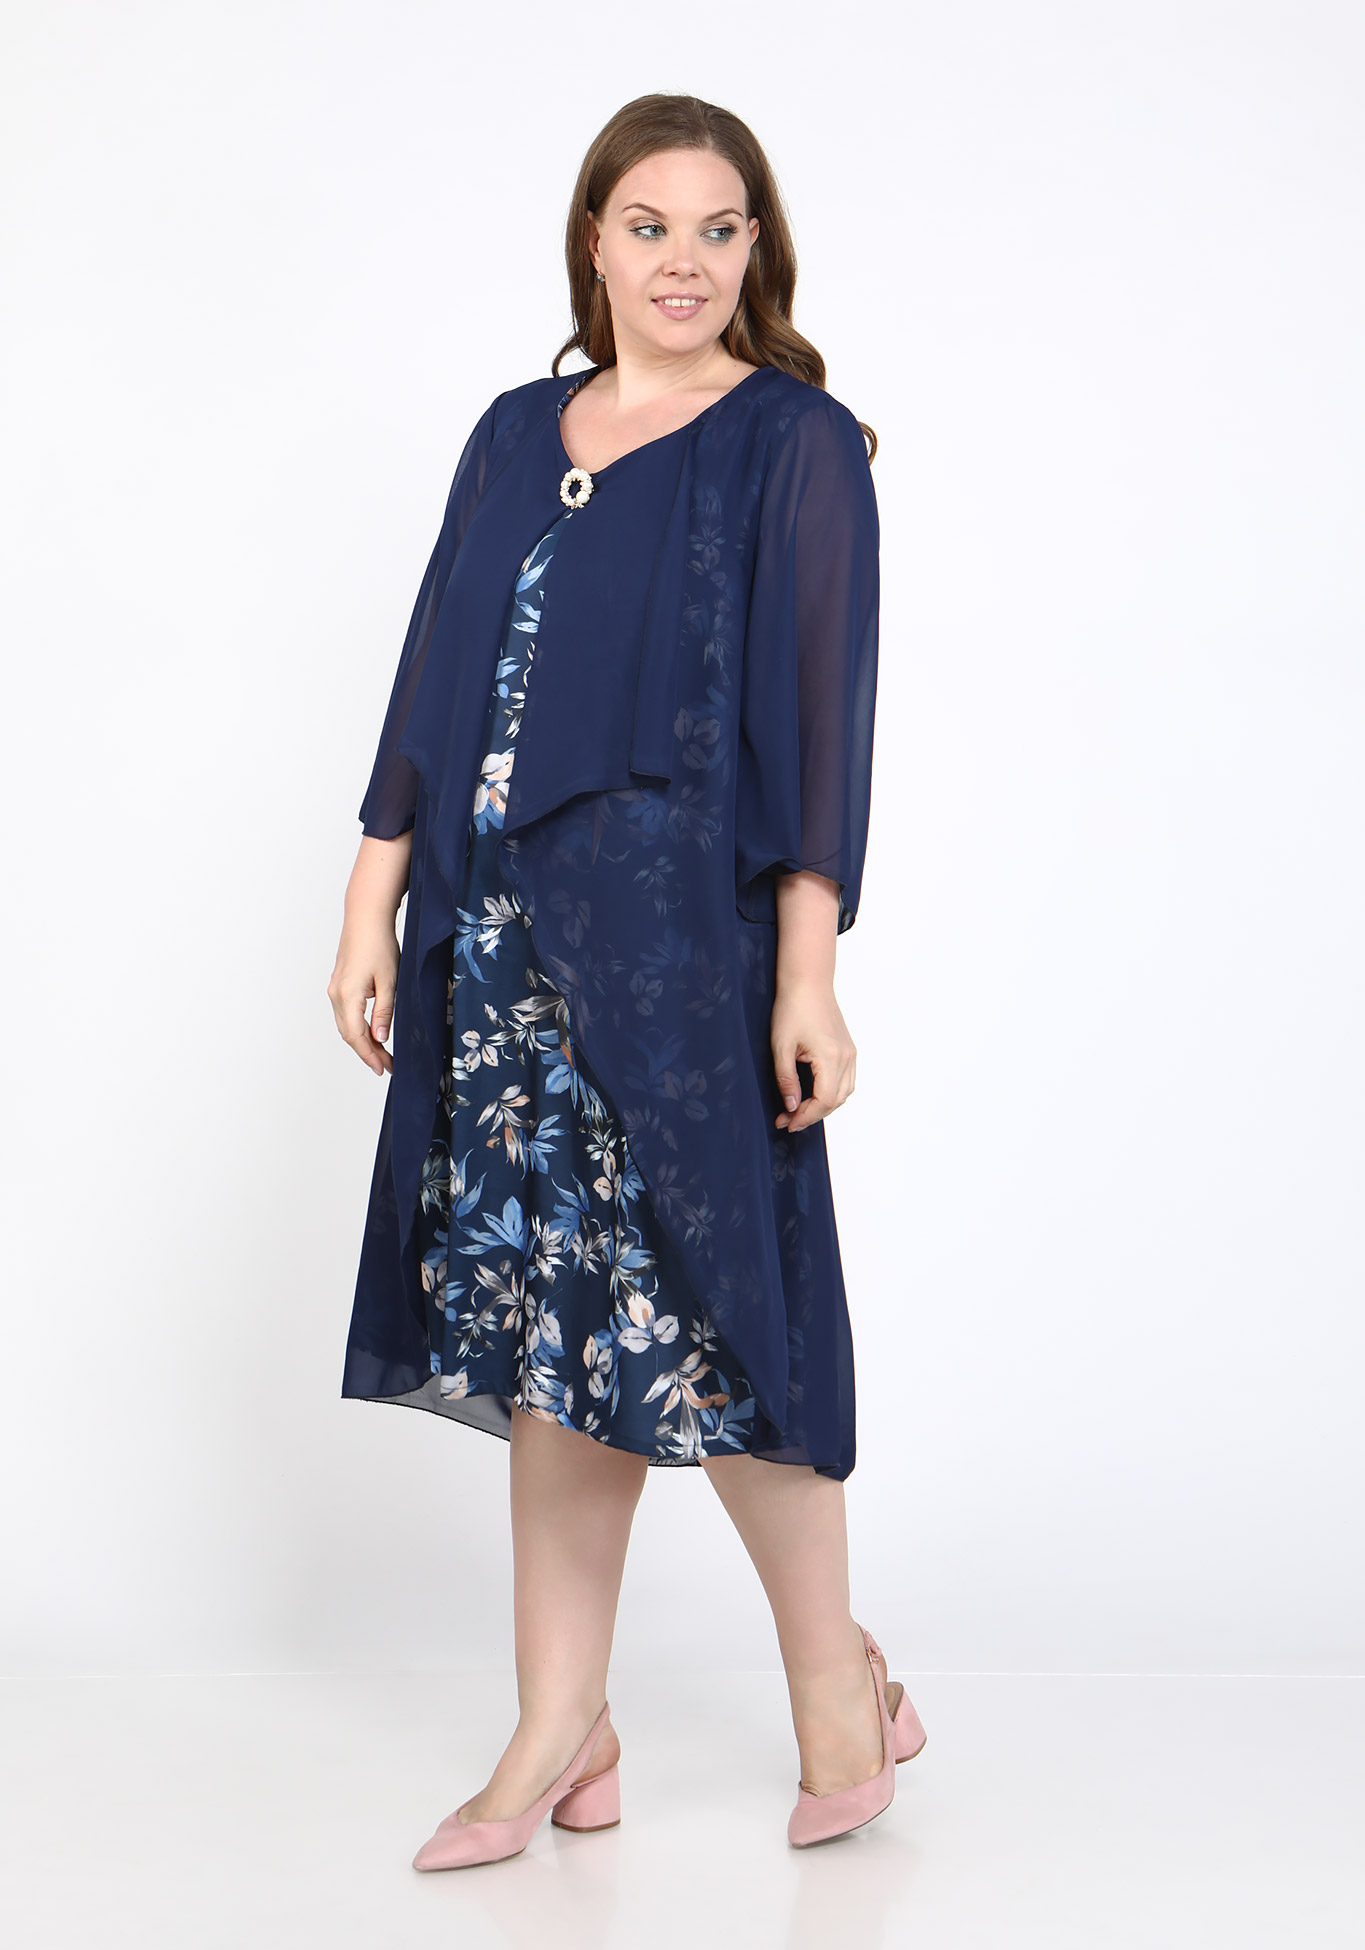 Платье "Трепетная встреча" Bianka Modeno, размер 48, цвет синий - фото 1